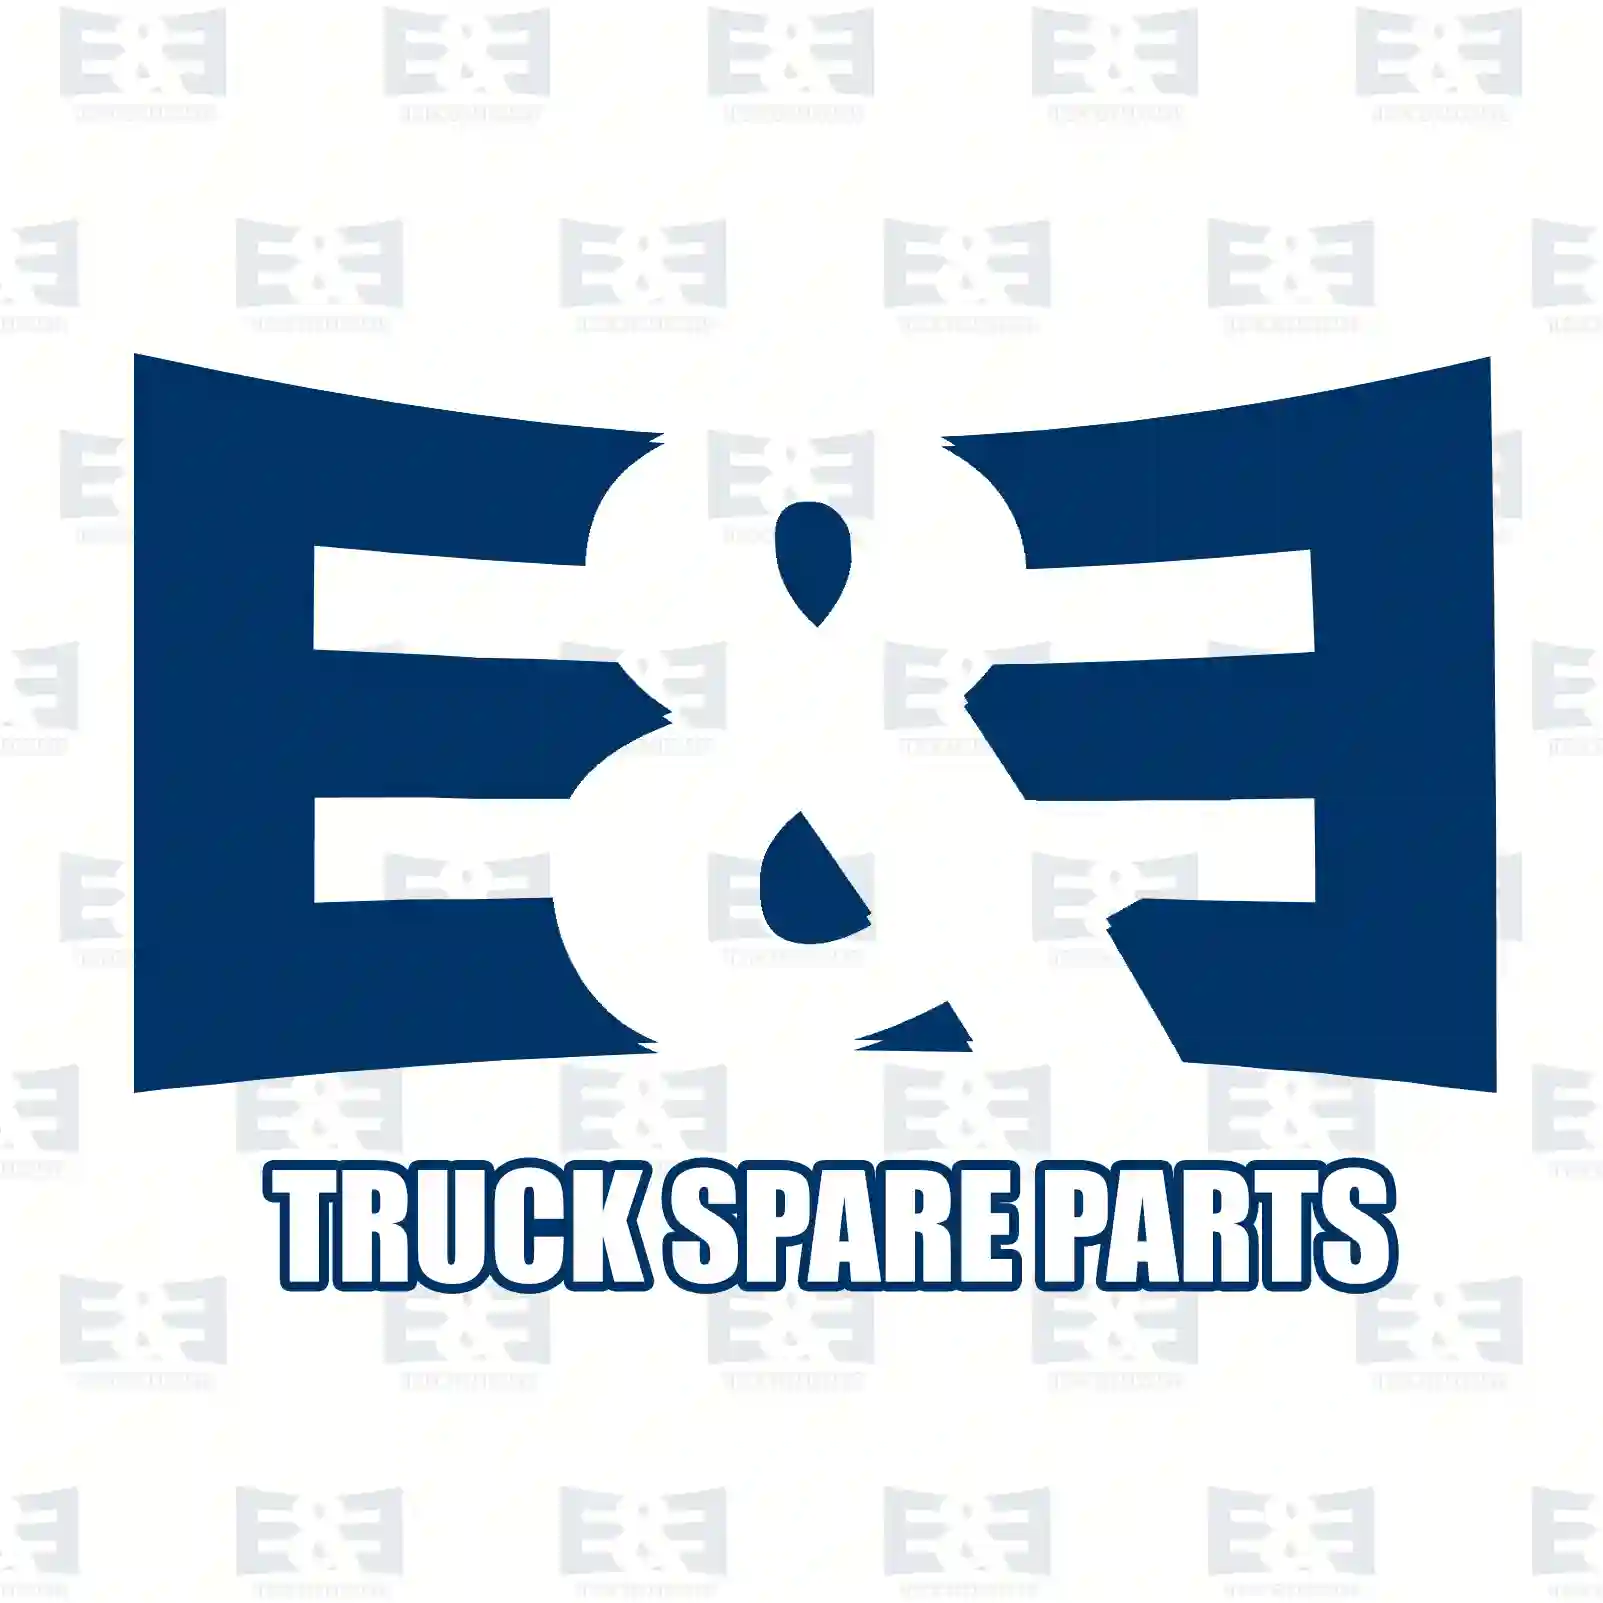 O-ring, 2E2285276, 1307340, 1338018, ZG02847-0008, ||  2E2285276 E&E Truck Spare Parts | Truck Spare Parts, Auotomotive Spare Parts O-ring, 2E2285276, 1307340, 1338018, ZG02847-0008, ||  2E2285276 E&E Truck Spare Parts | Truck Spare Parts, Auotomotive Spare Parts